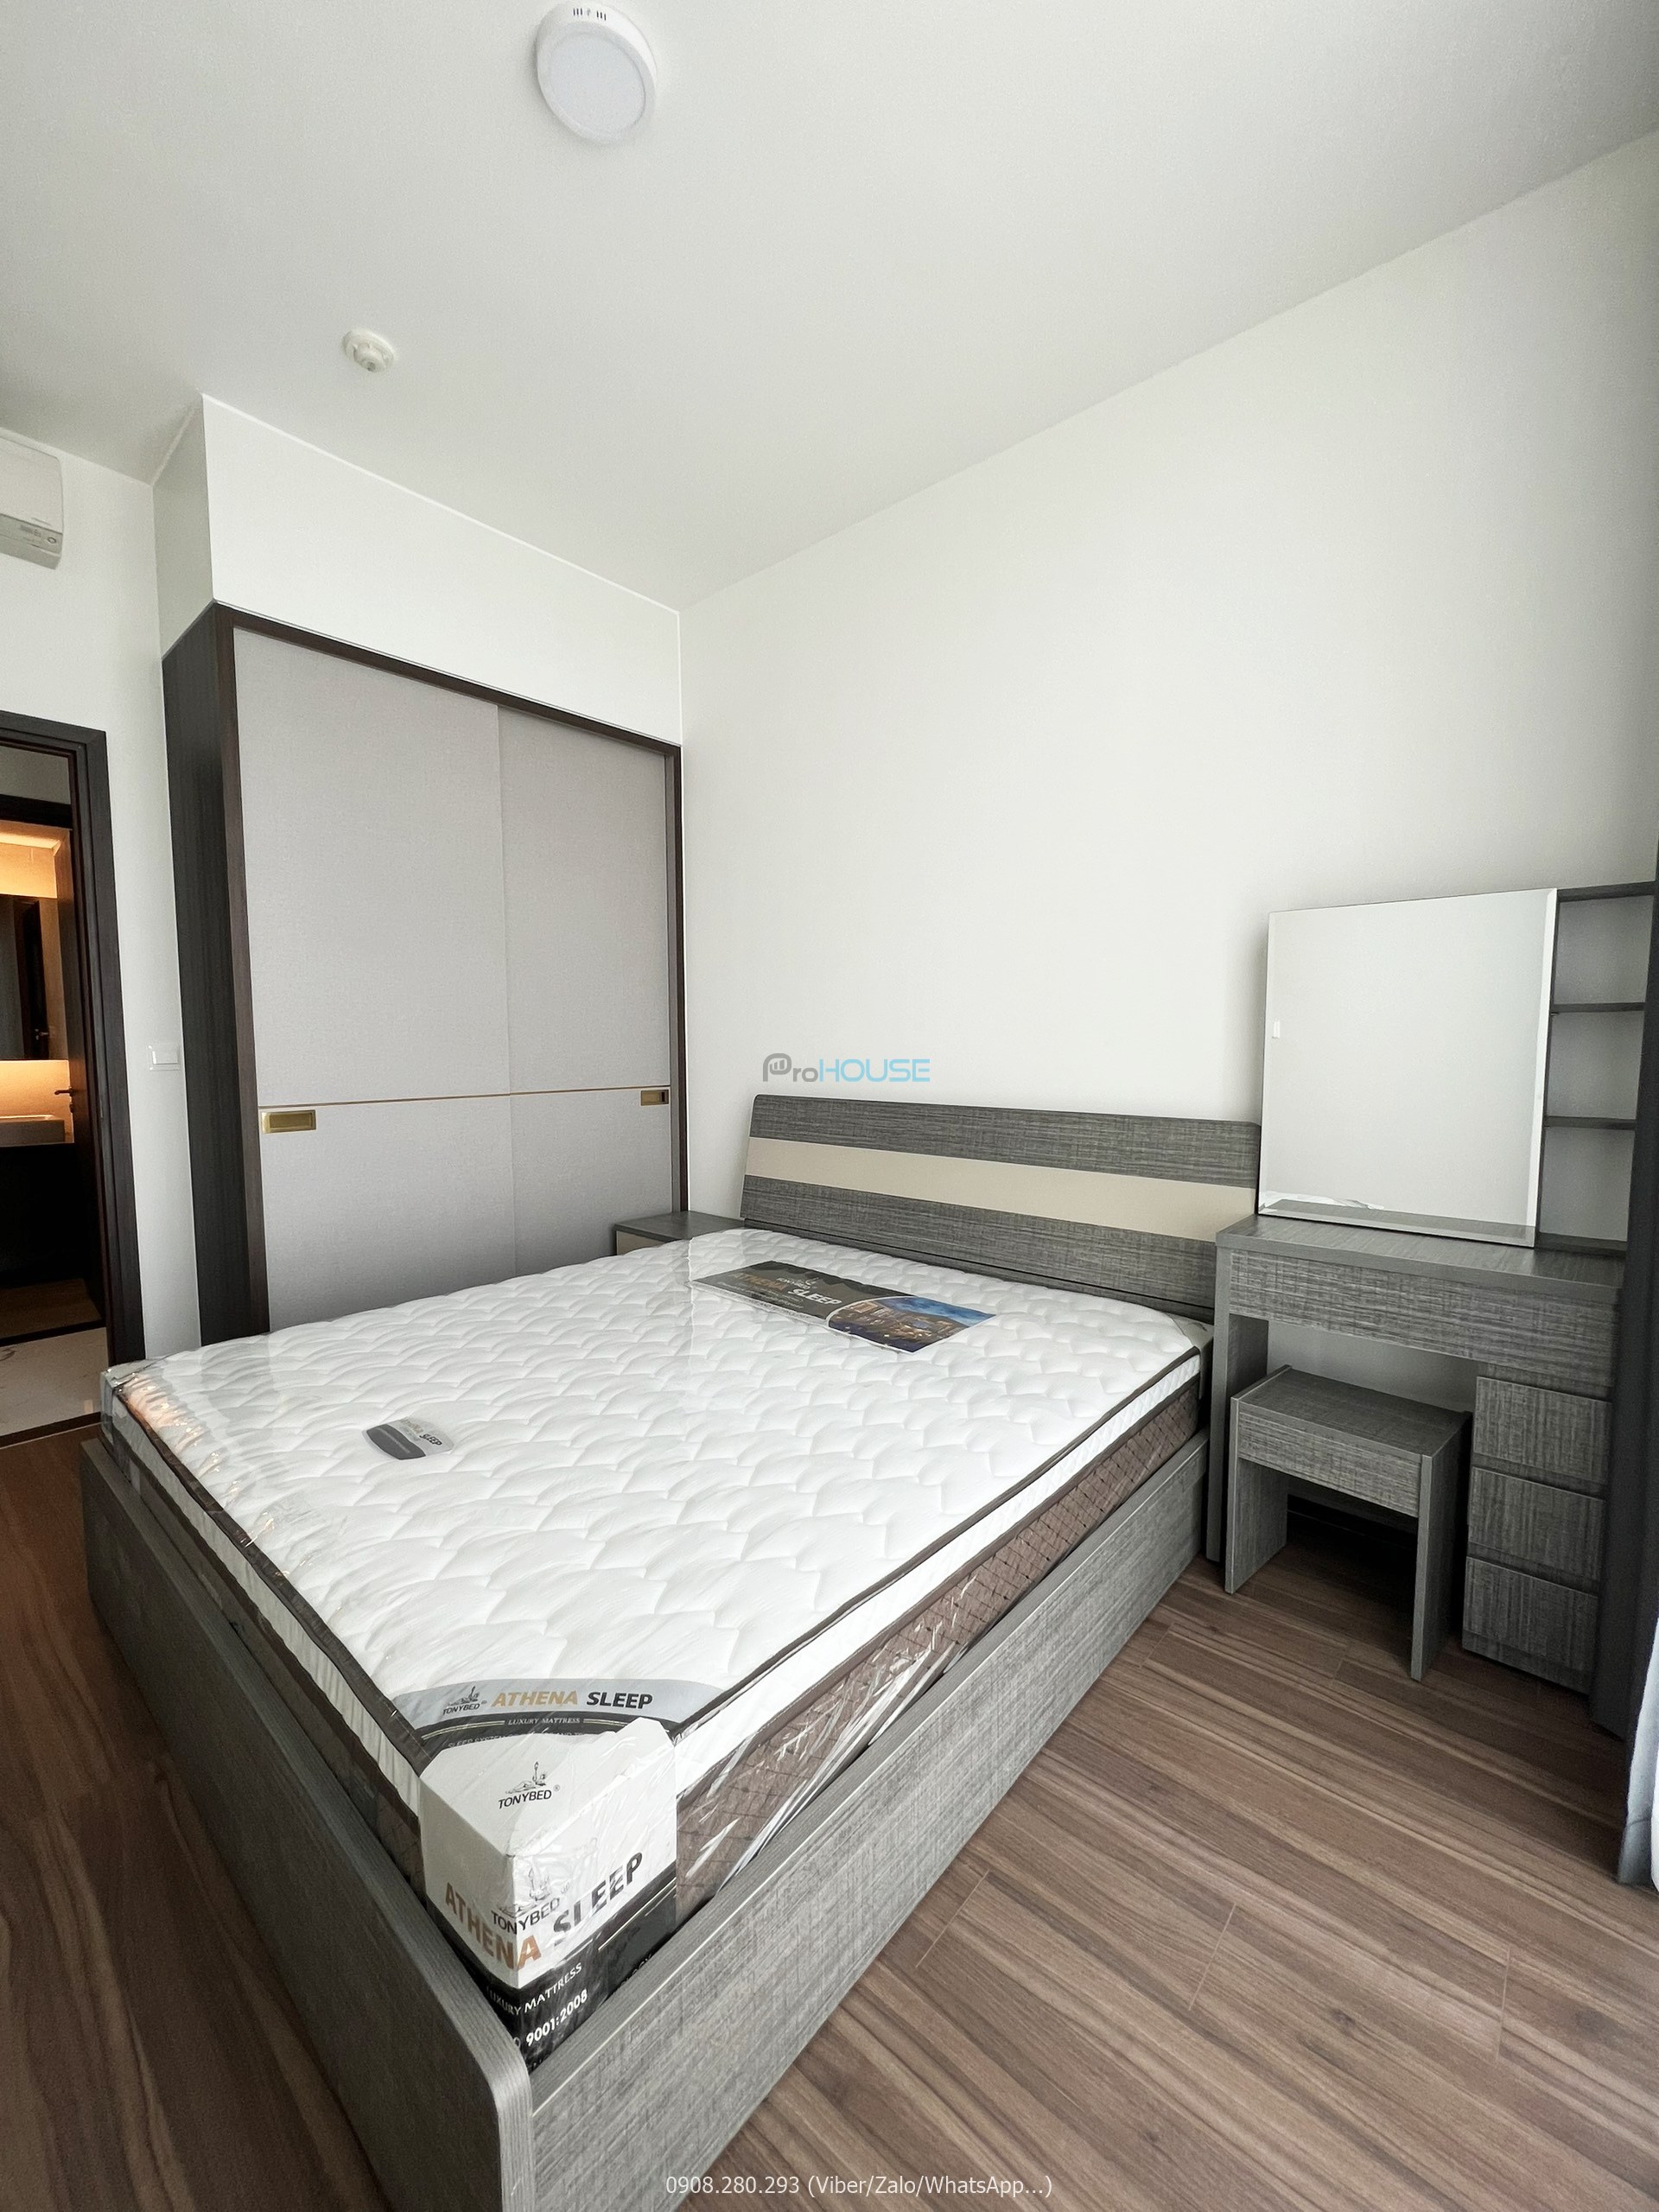 Căn hộ 2 phòng ngủ Tilia Residences lầu cao nội thất đẹp cho thuê